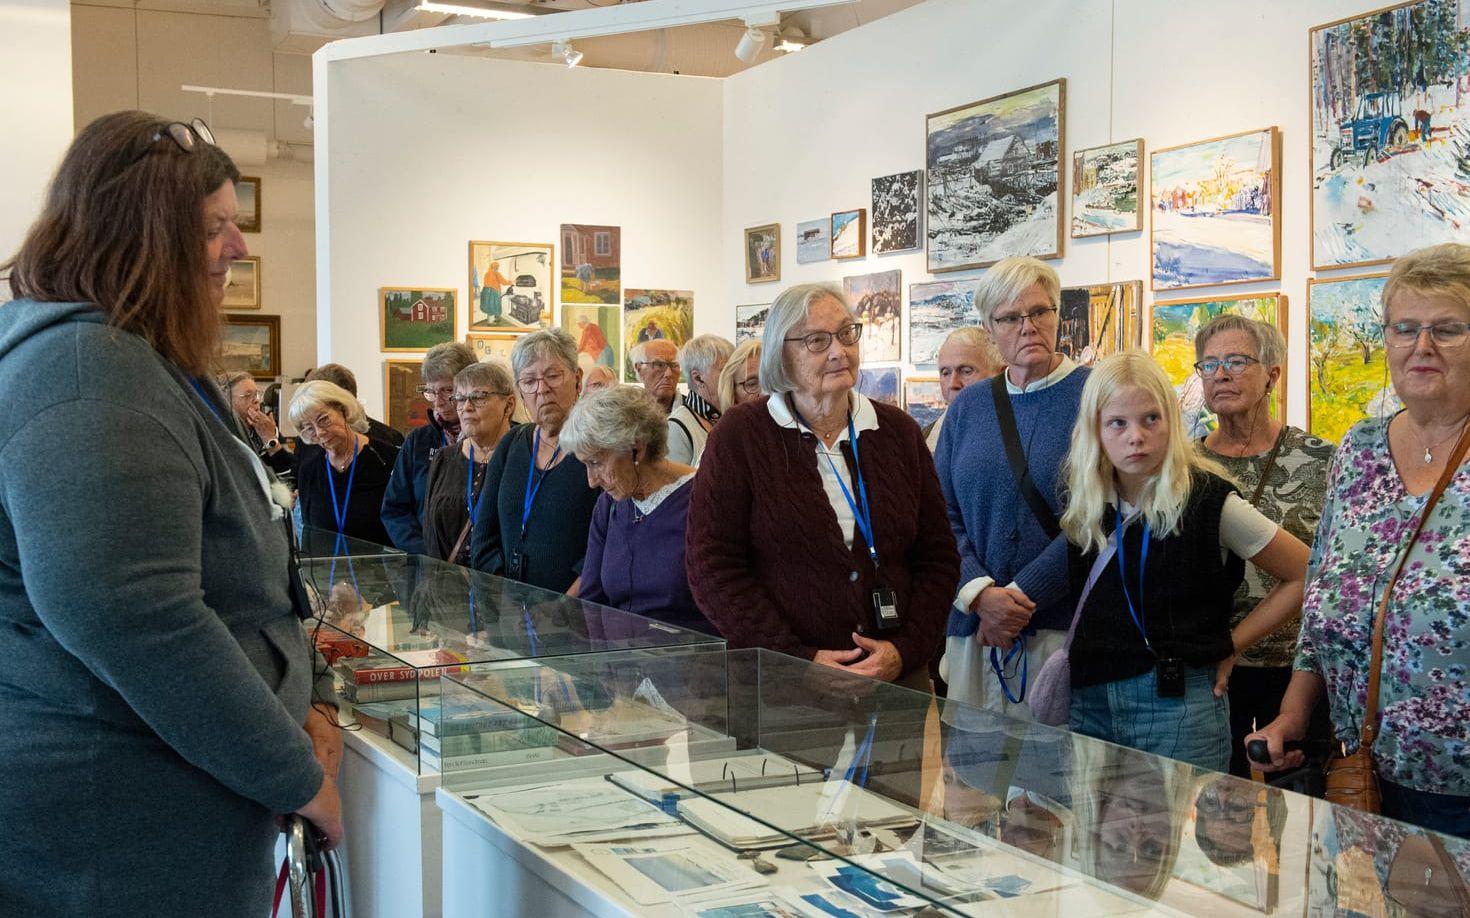 På rundturen i Sandgrunds lokaler berättar guiden mycket om konstnären Lars Lerins liv och gärningar. I bakgrunden syns hans tidiga verk i olja.